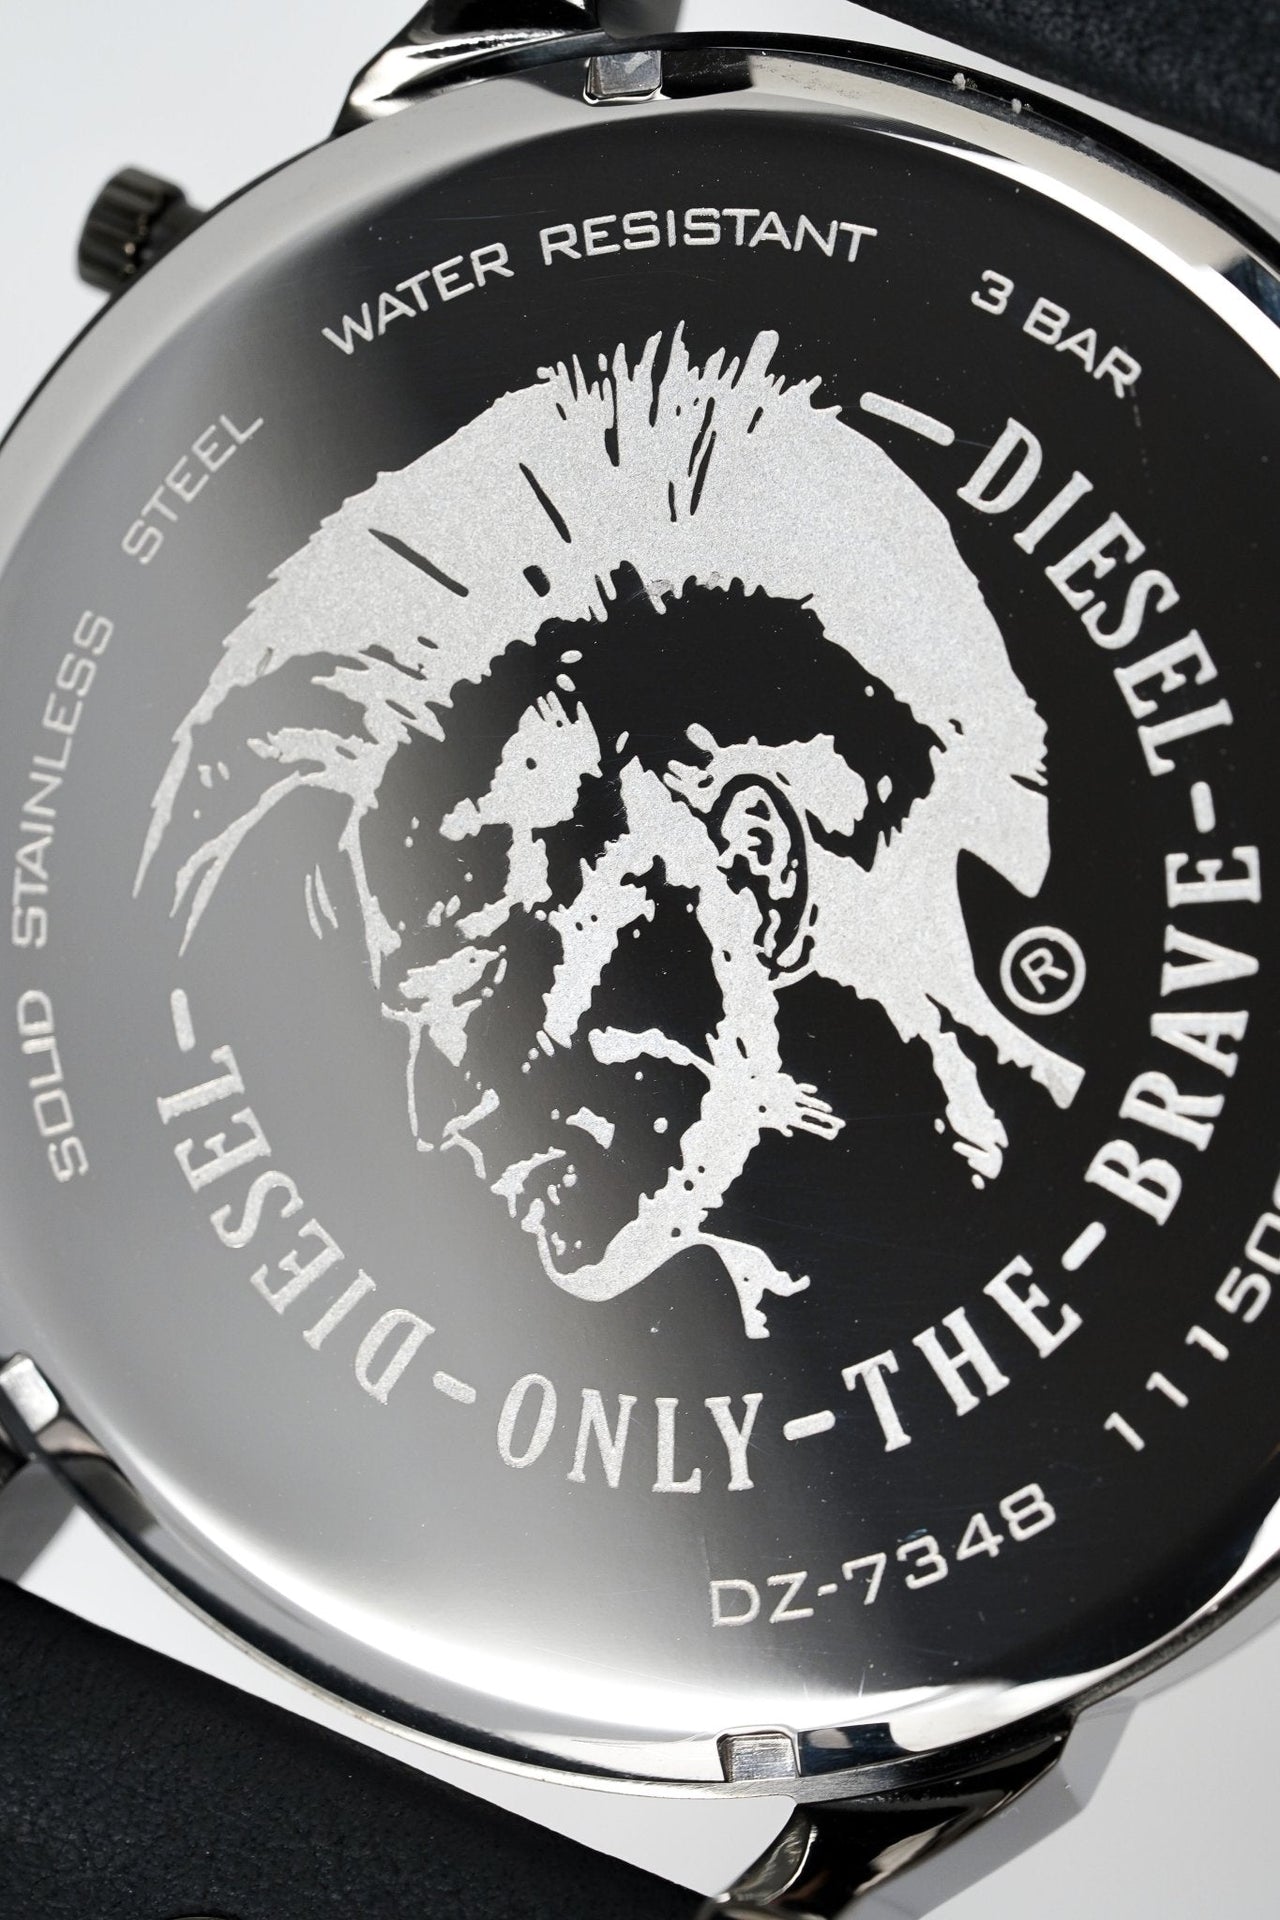 Diesel Men's Chronograph Watch Mr Daddy 2.0 Black Gold DZ7348 - Watches & Crystals